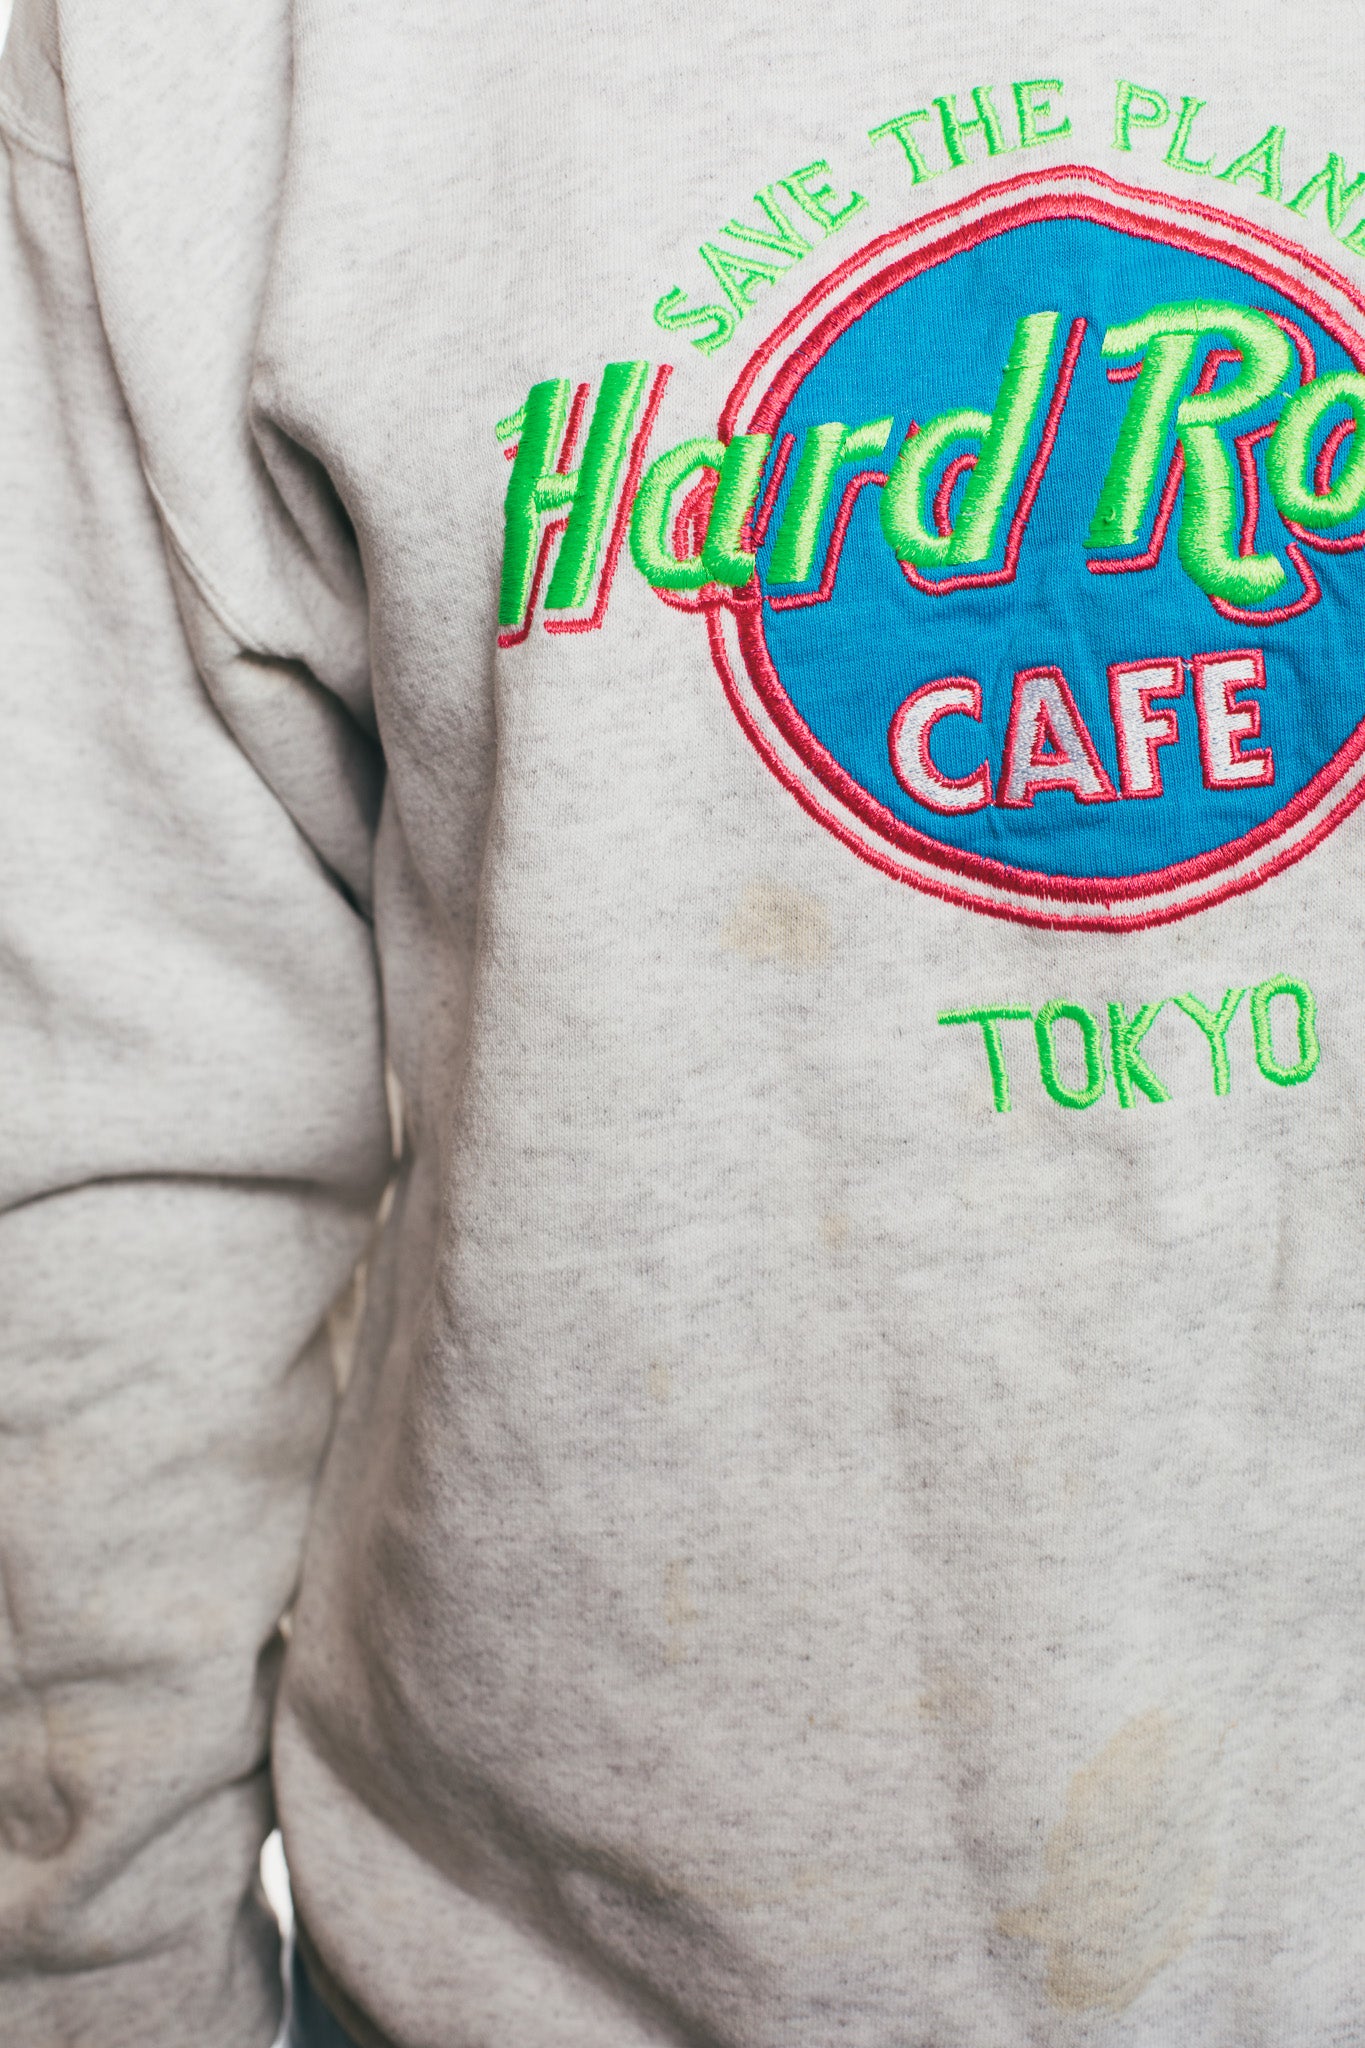 Hard Rock - Sweatshirt